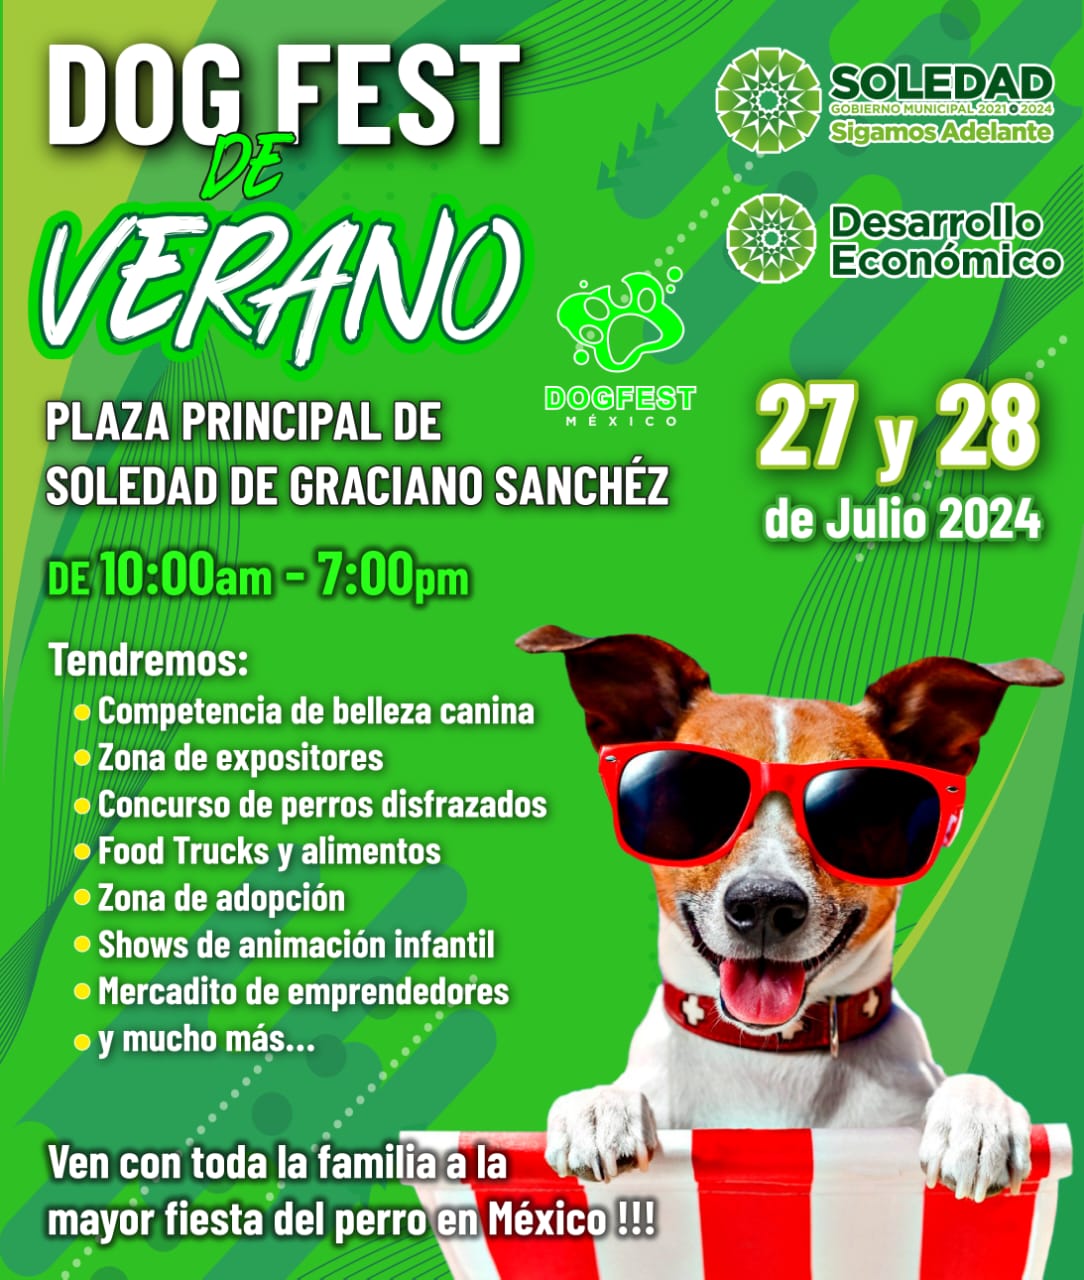 Soledad de Graciano Sánchez prepara atractivo expo regional canina